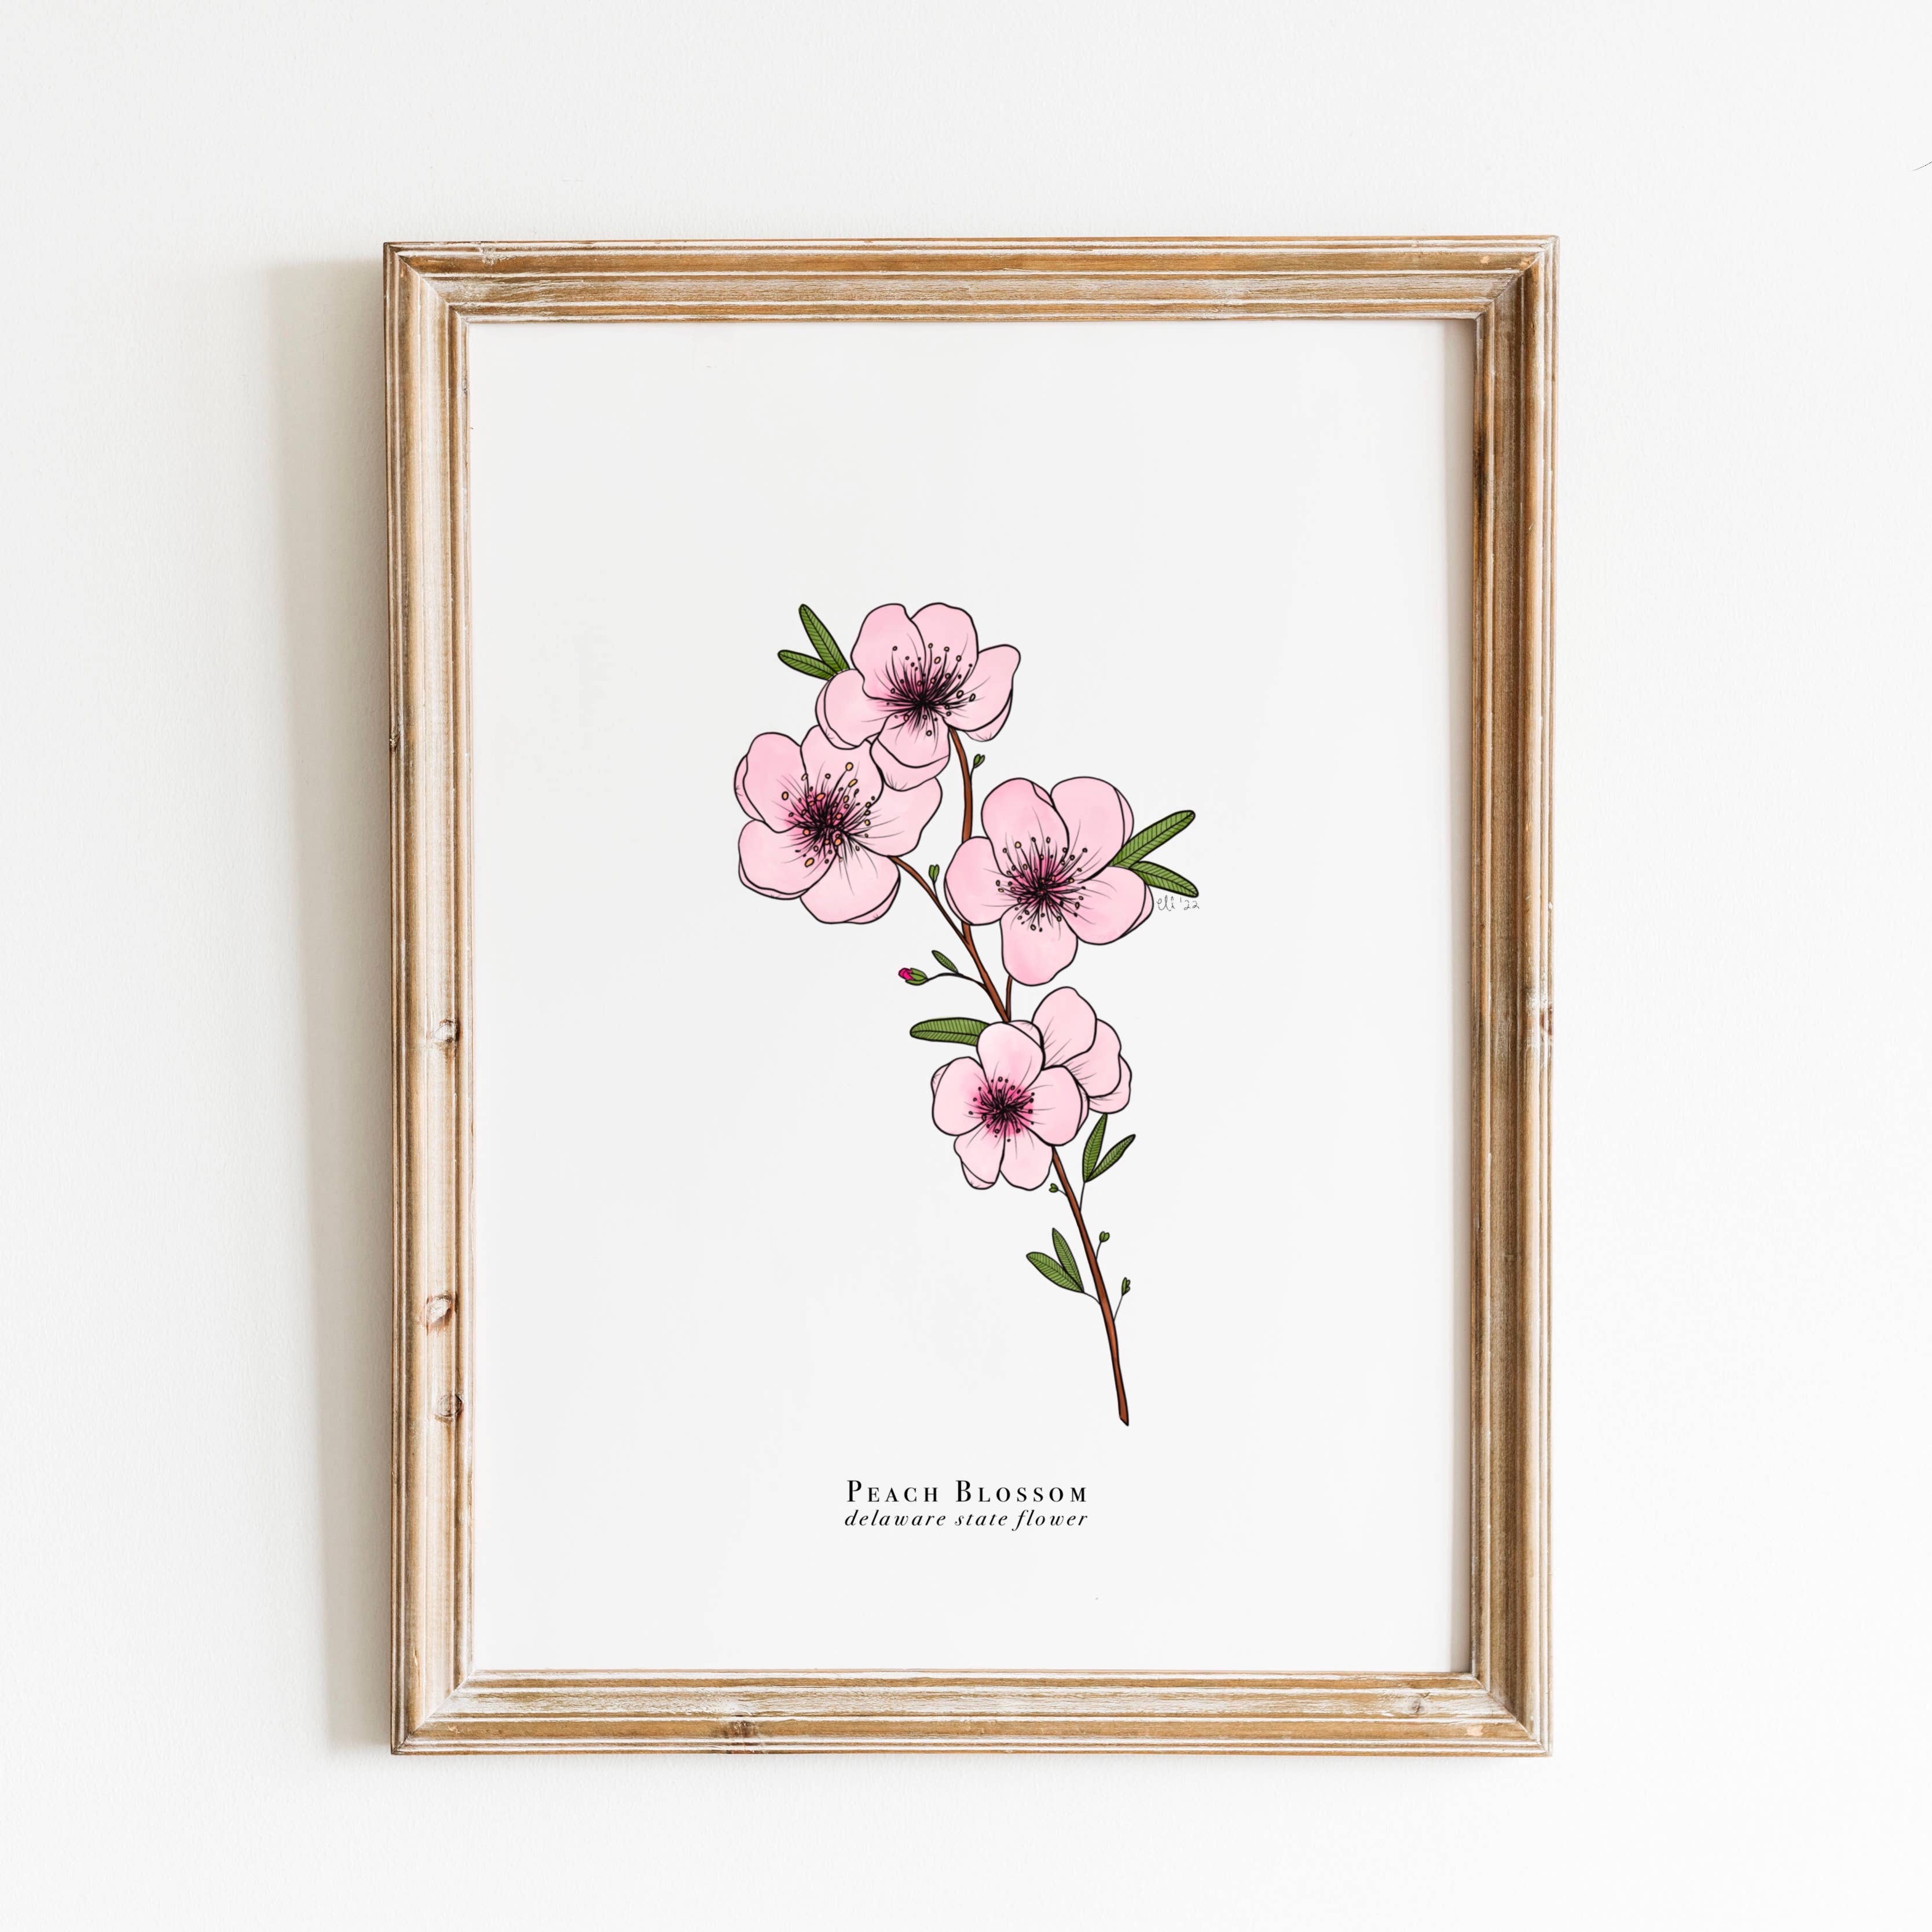 Delaware State Flower - Peach Blossom